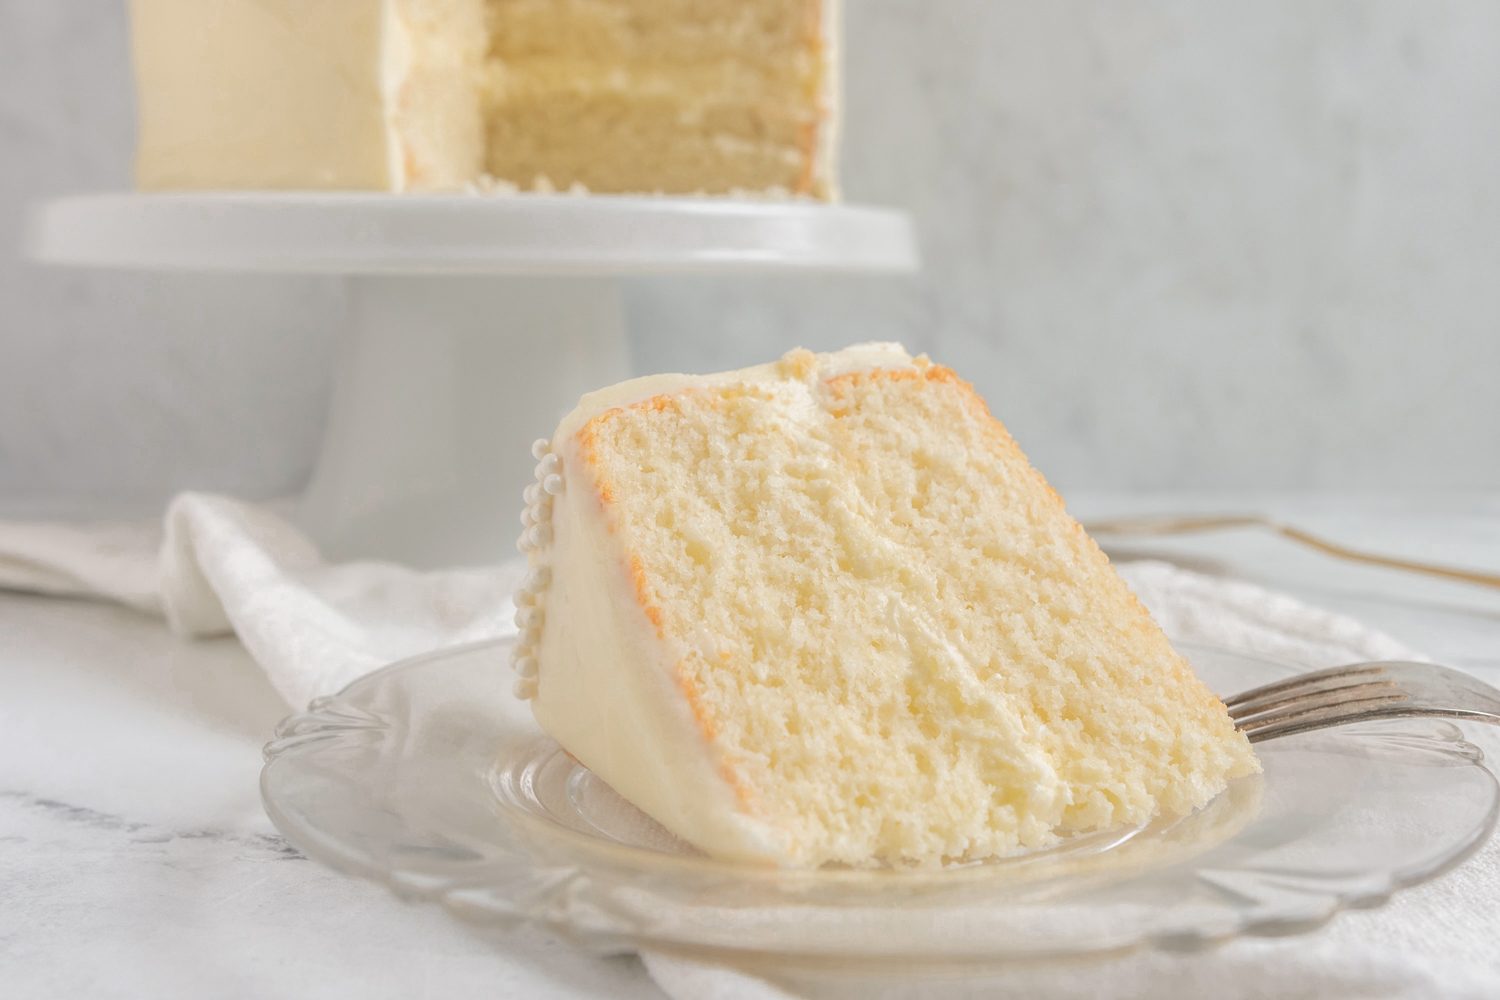 How to Make a White Velvet Cake